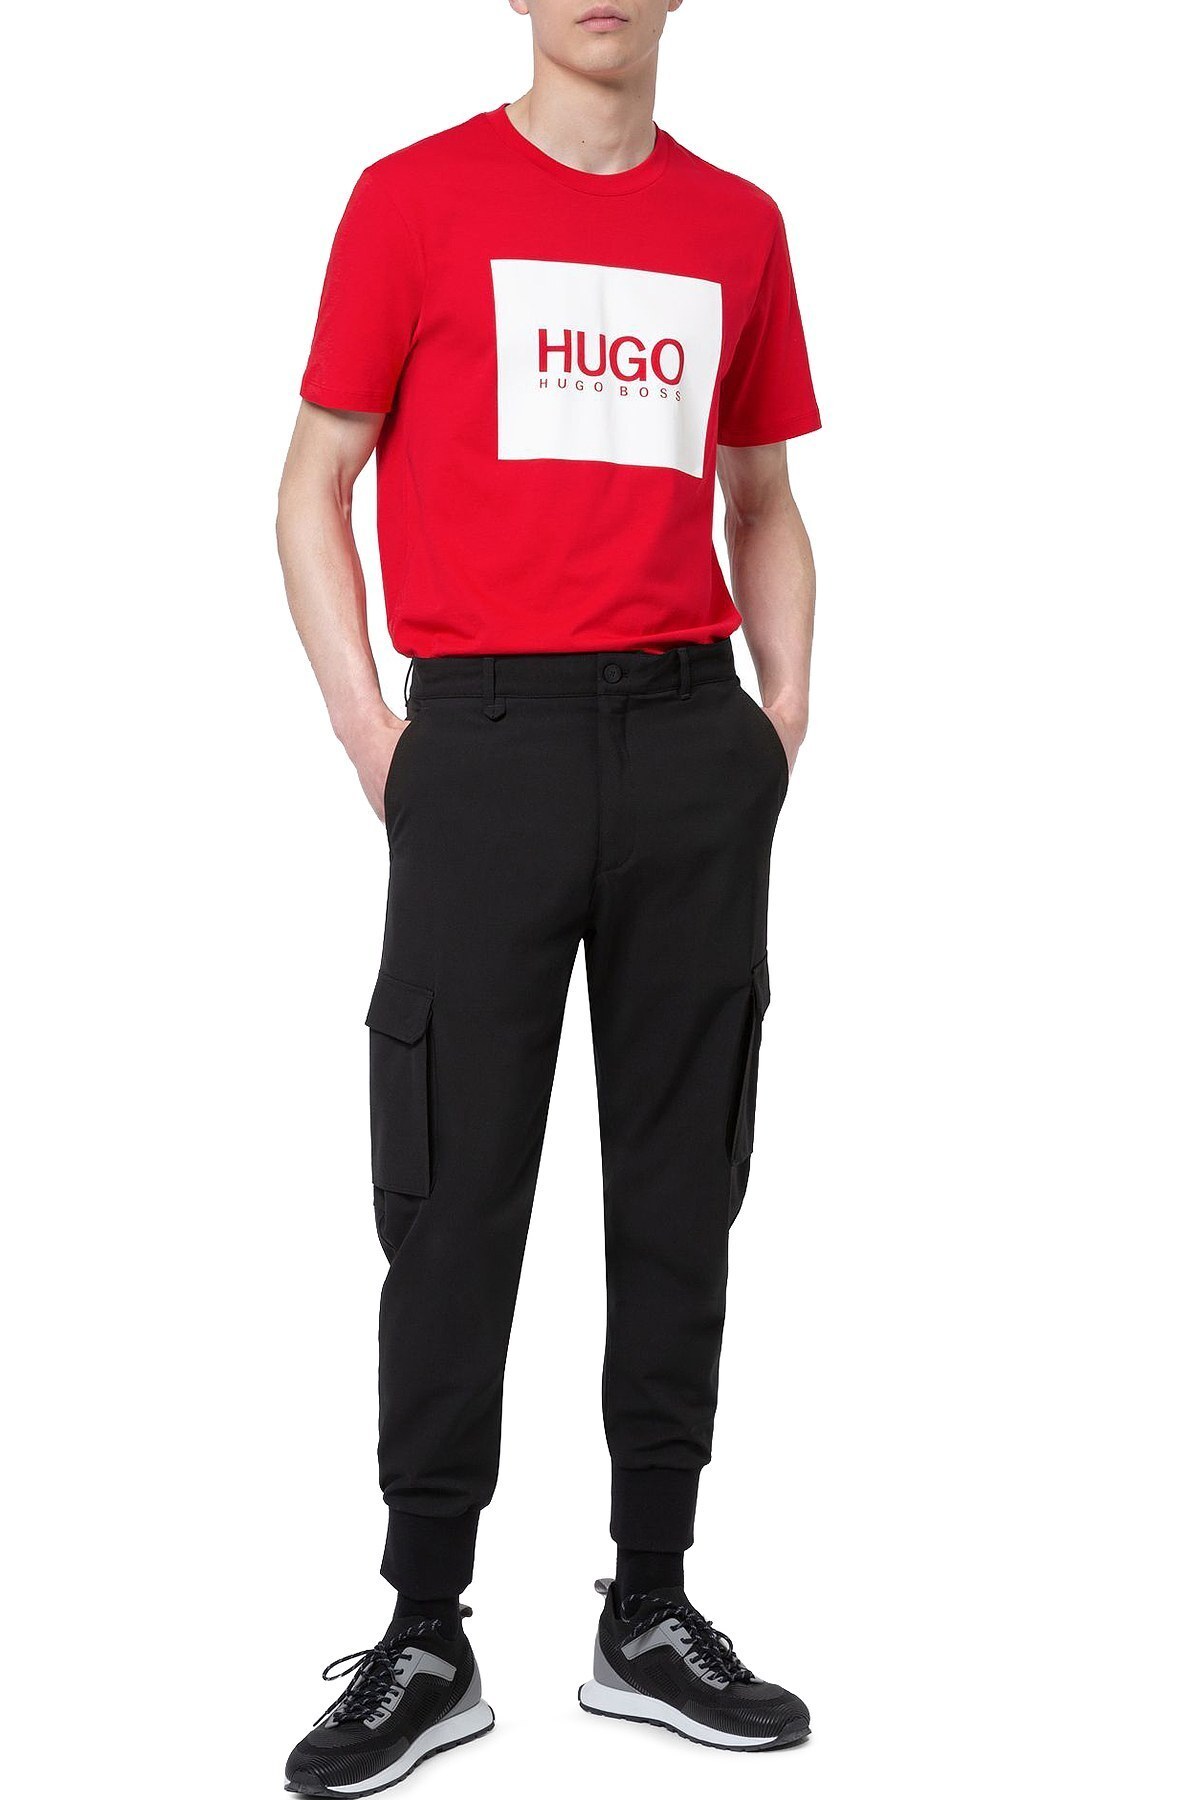 Hugo Boss % 100 Pamuklu Bisiklet Yaka Erkek T Shirt 50448795 693 KIRMIZI